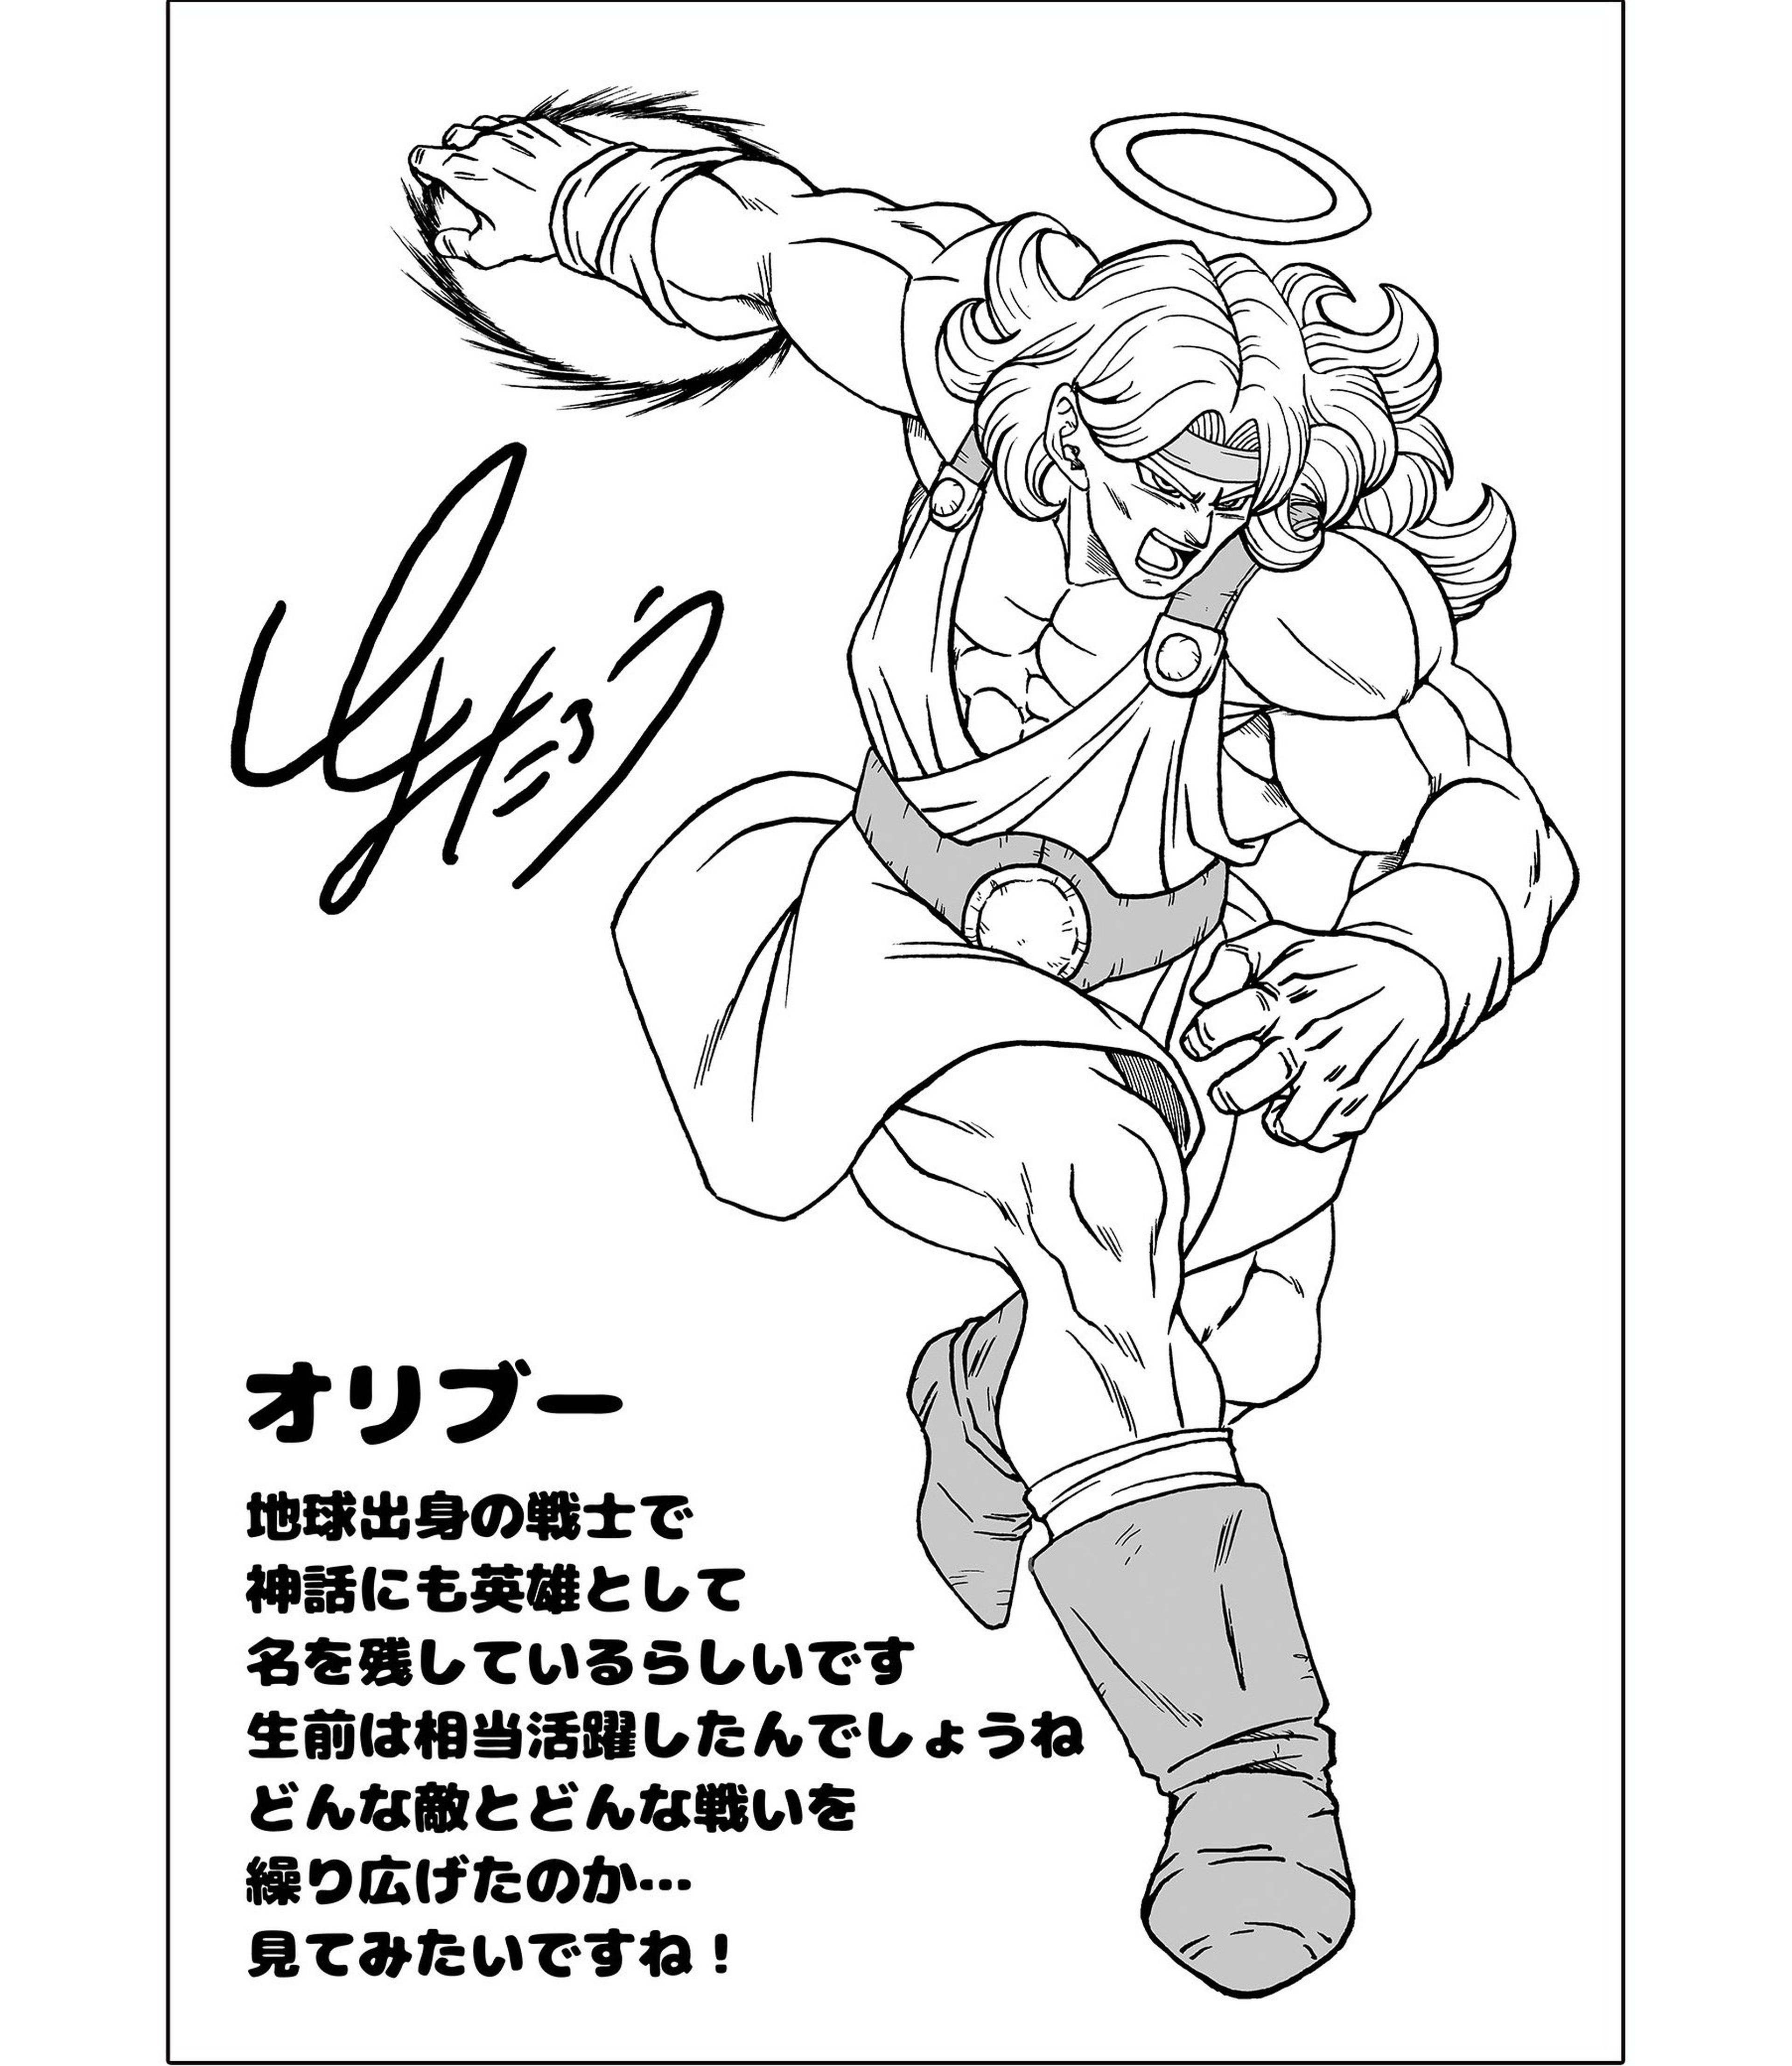 Dragon Ball Z - Toyotaro vuelve a dibujar un personaje olvidado del Otro Mundo. ¿Lo recuerdas?